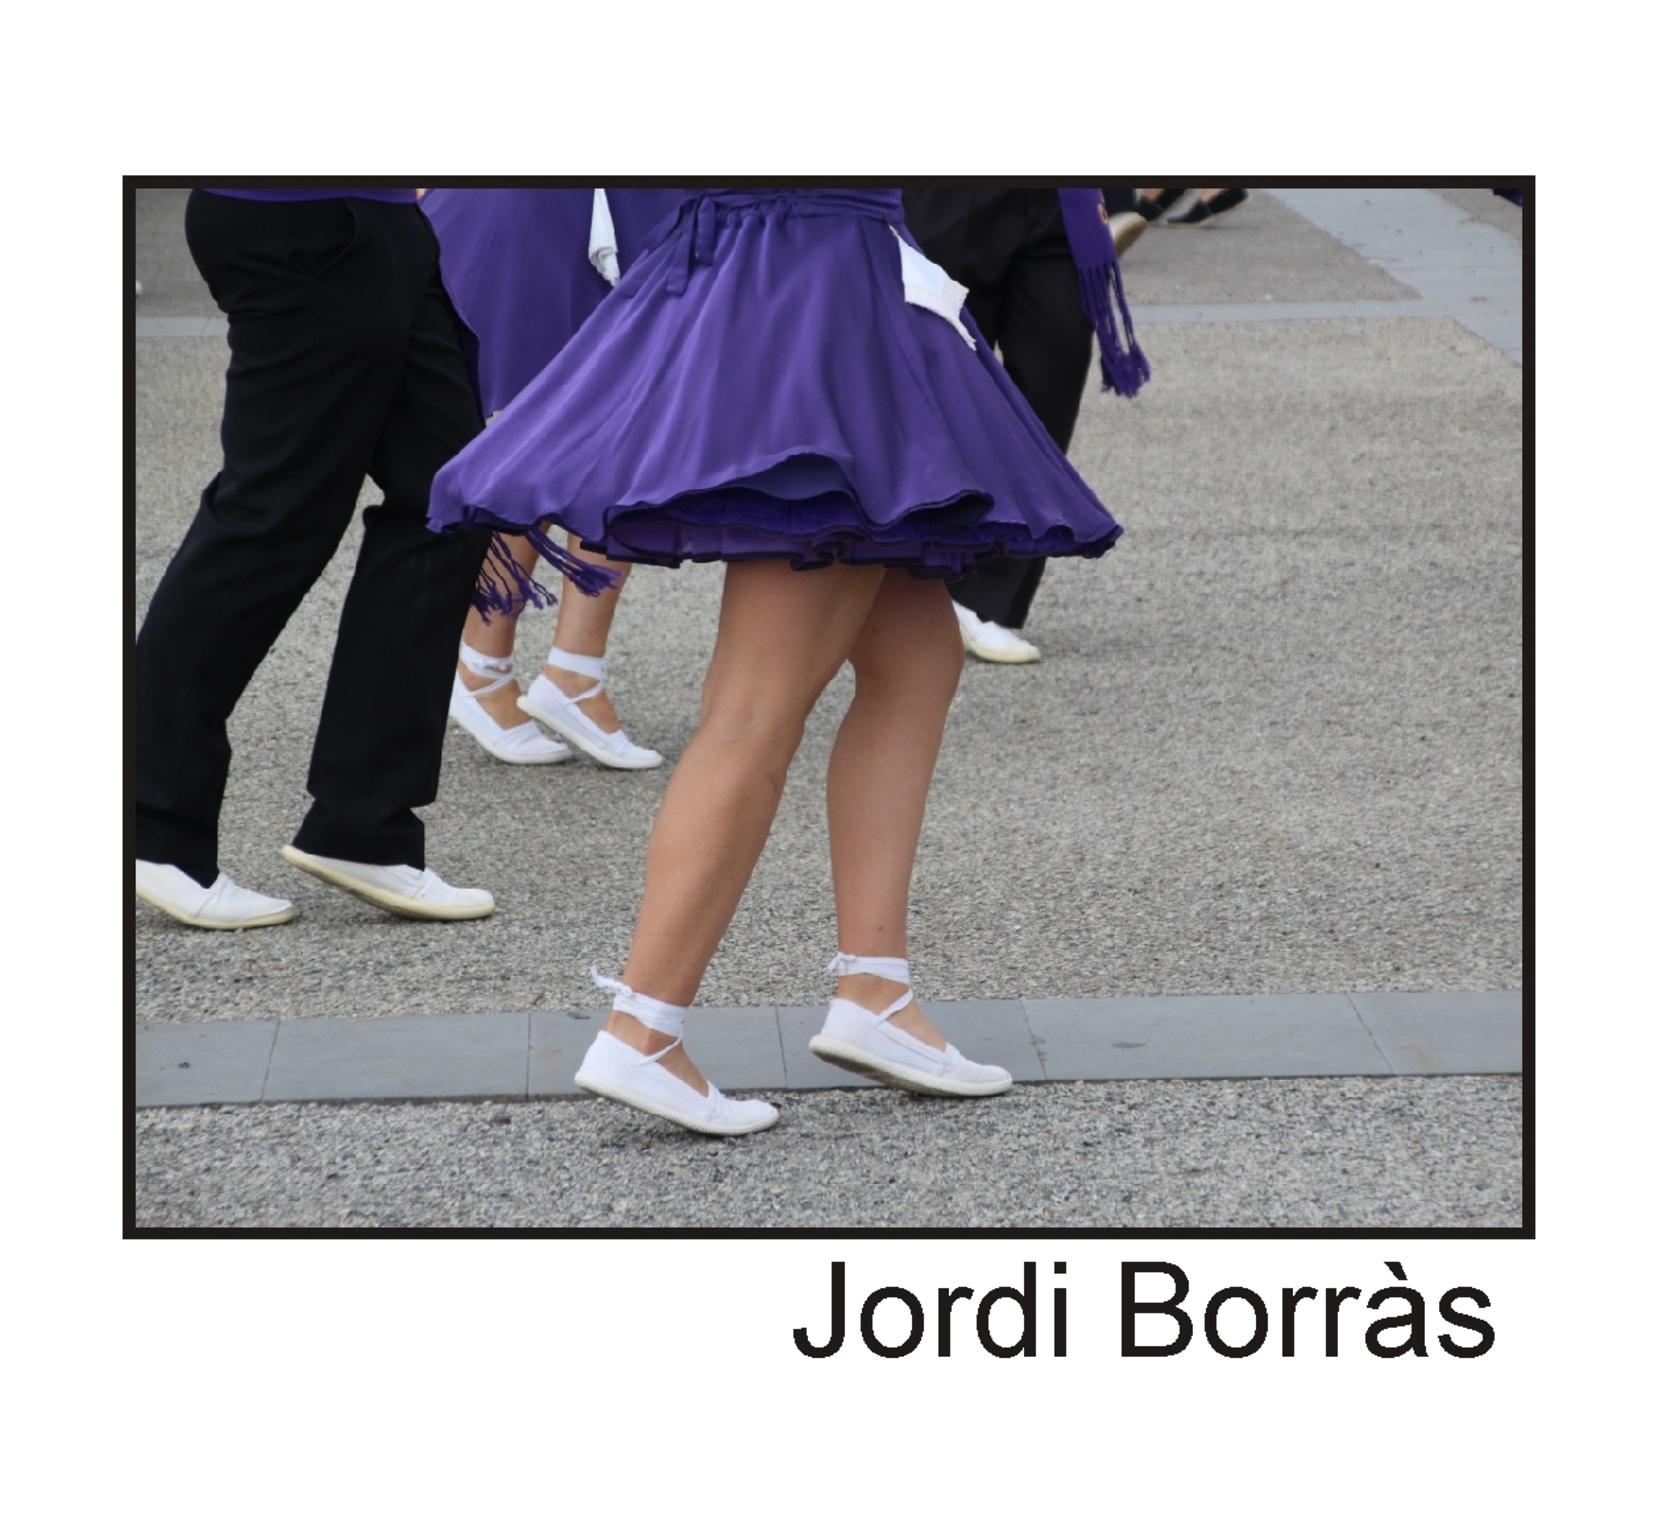  Jordi Borras